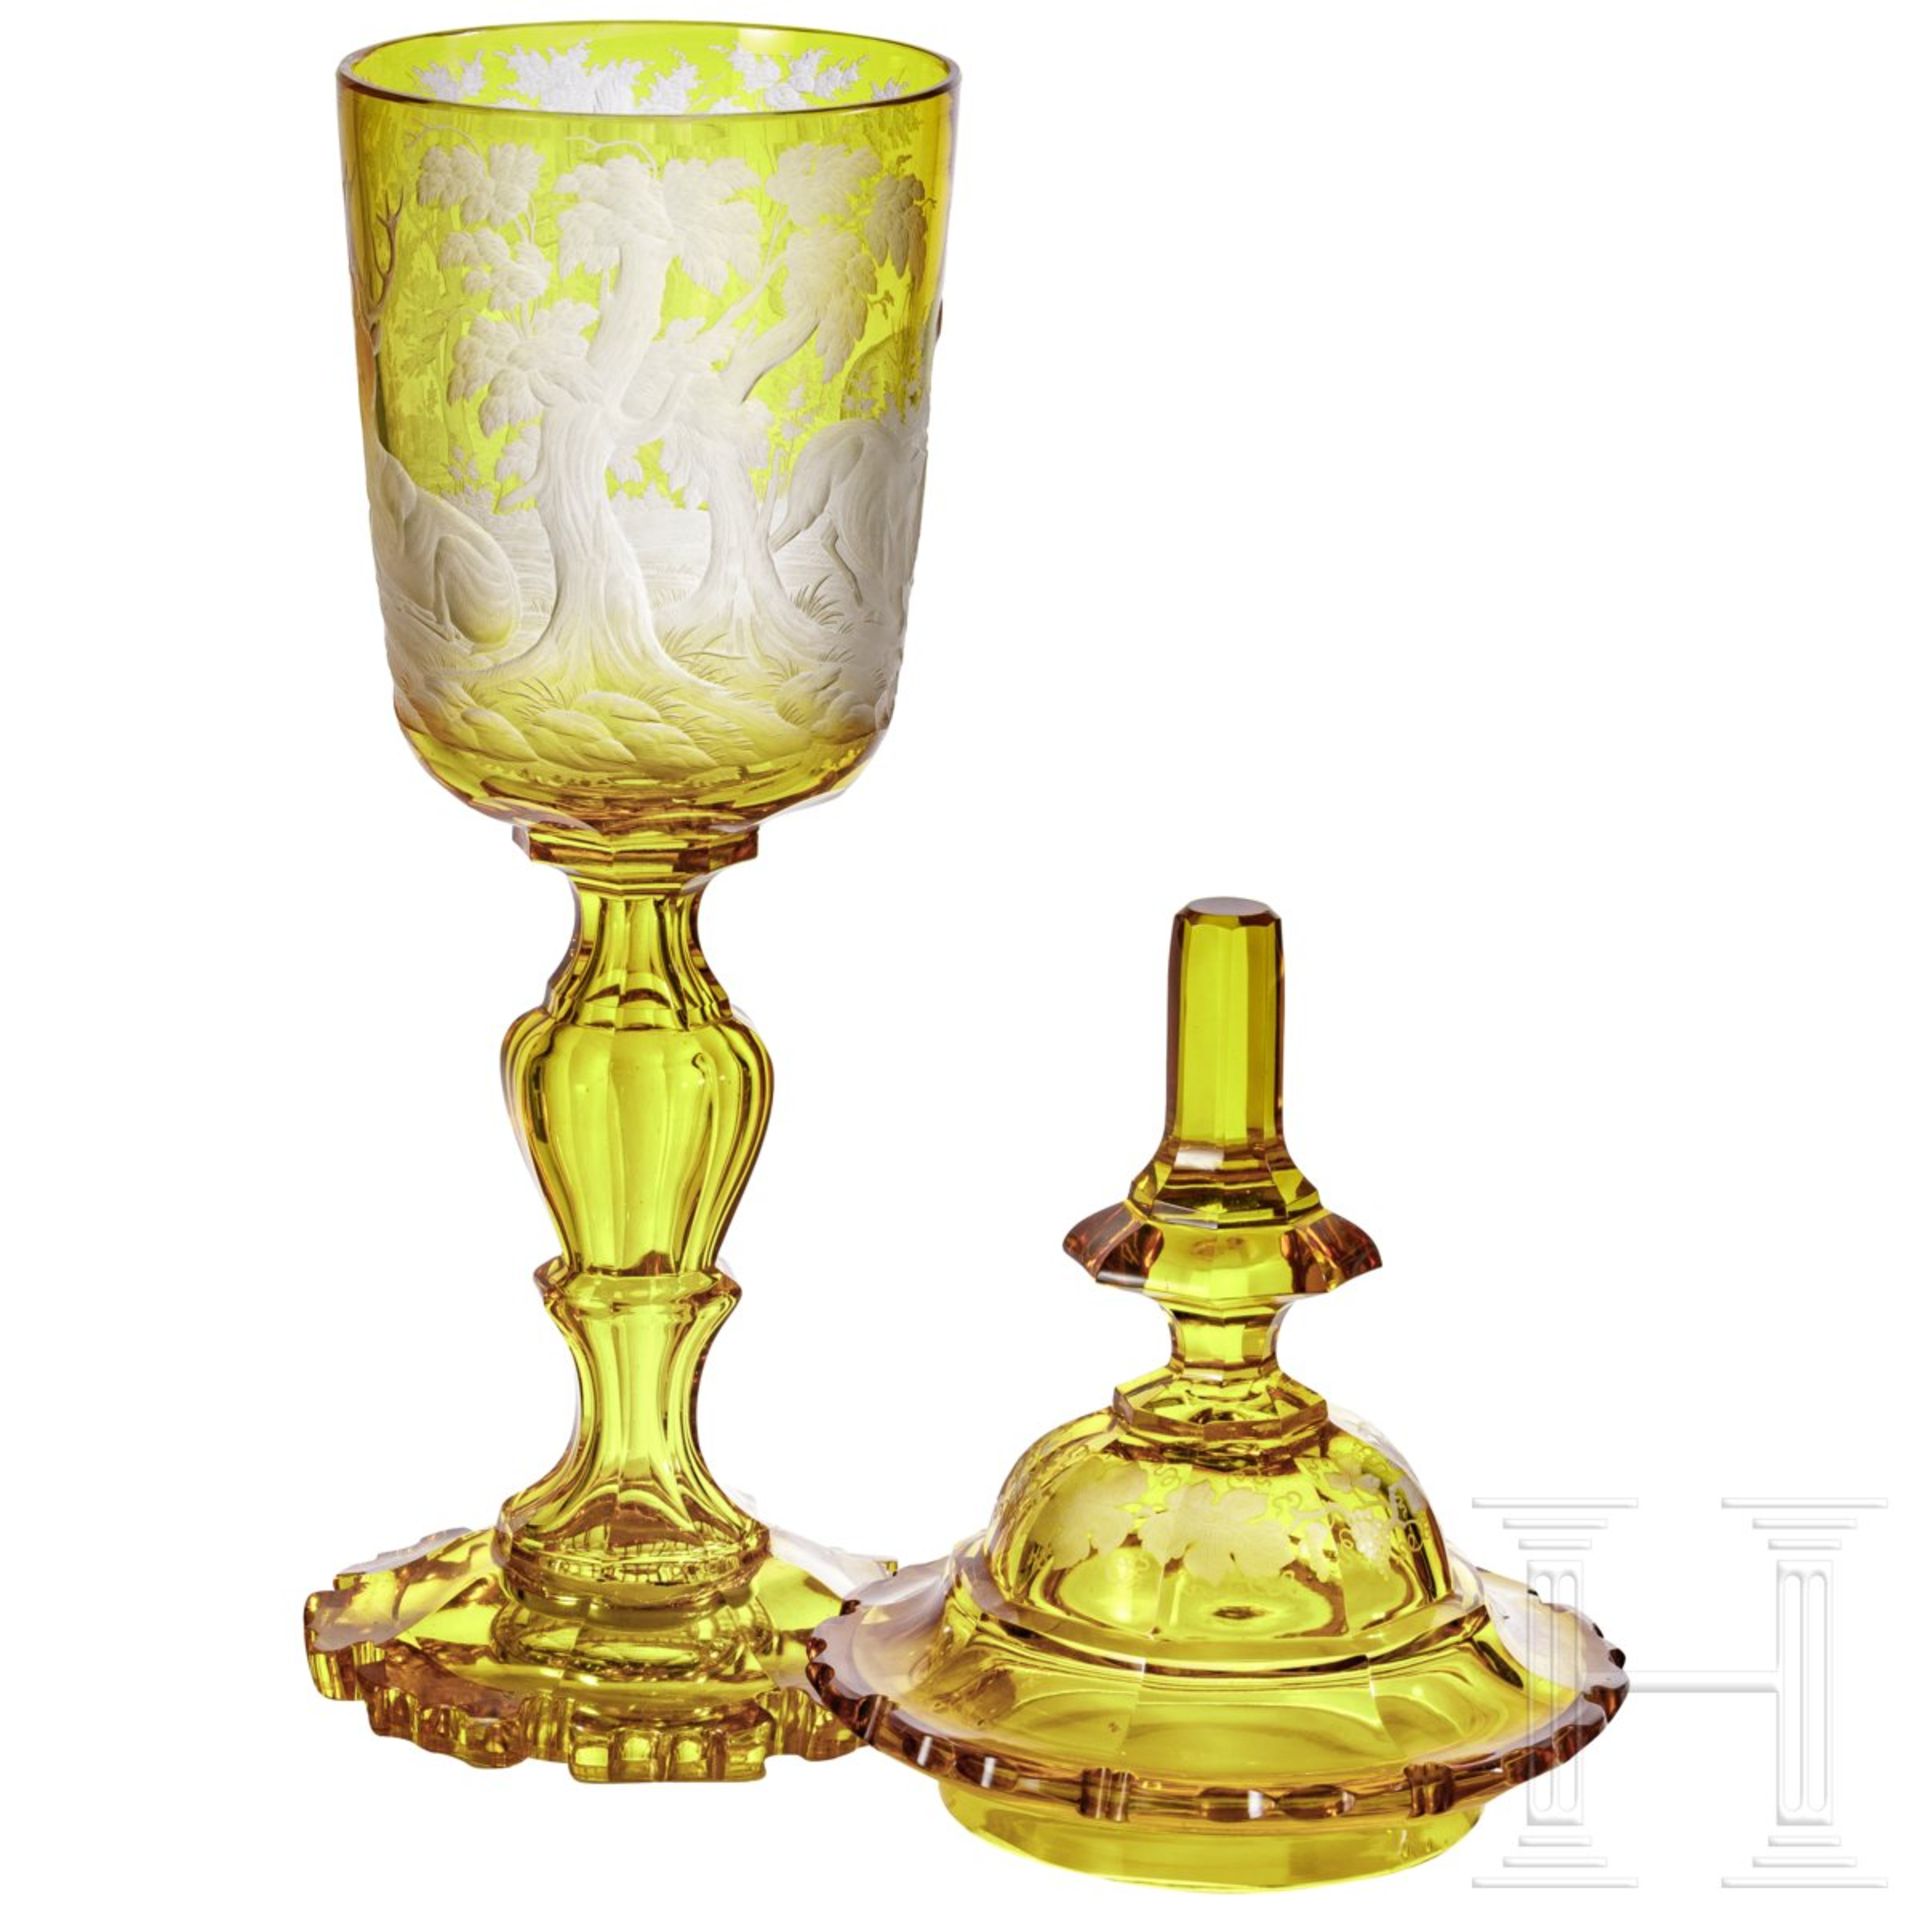 Großer Deckelpokal mit jagdlichen Motiven, Böhmen, 19. Jhdt.Gelbliches Glas mit allseitig - Bild 3 aus 4